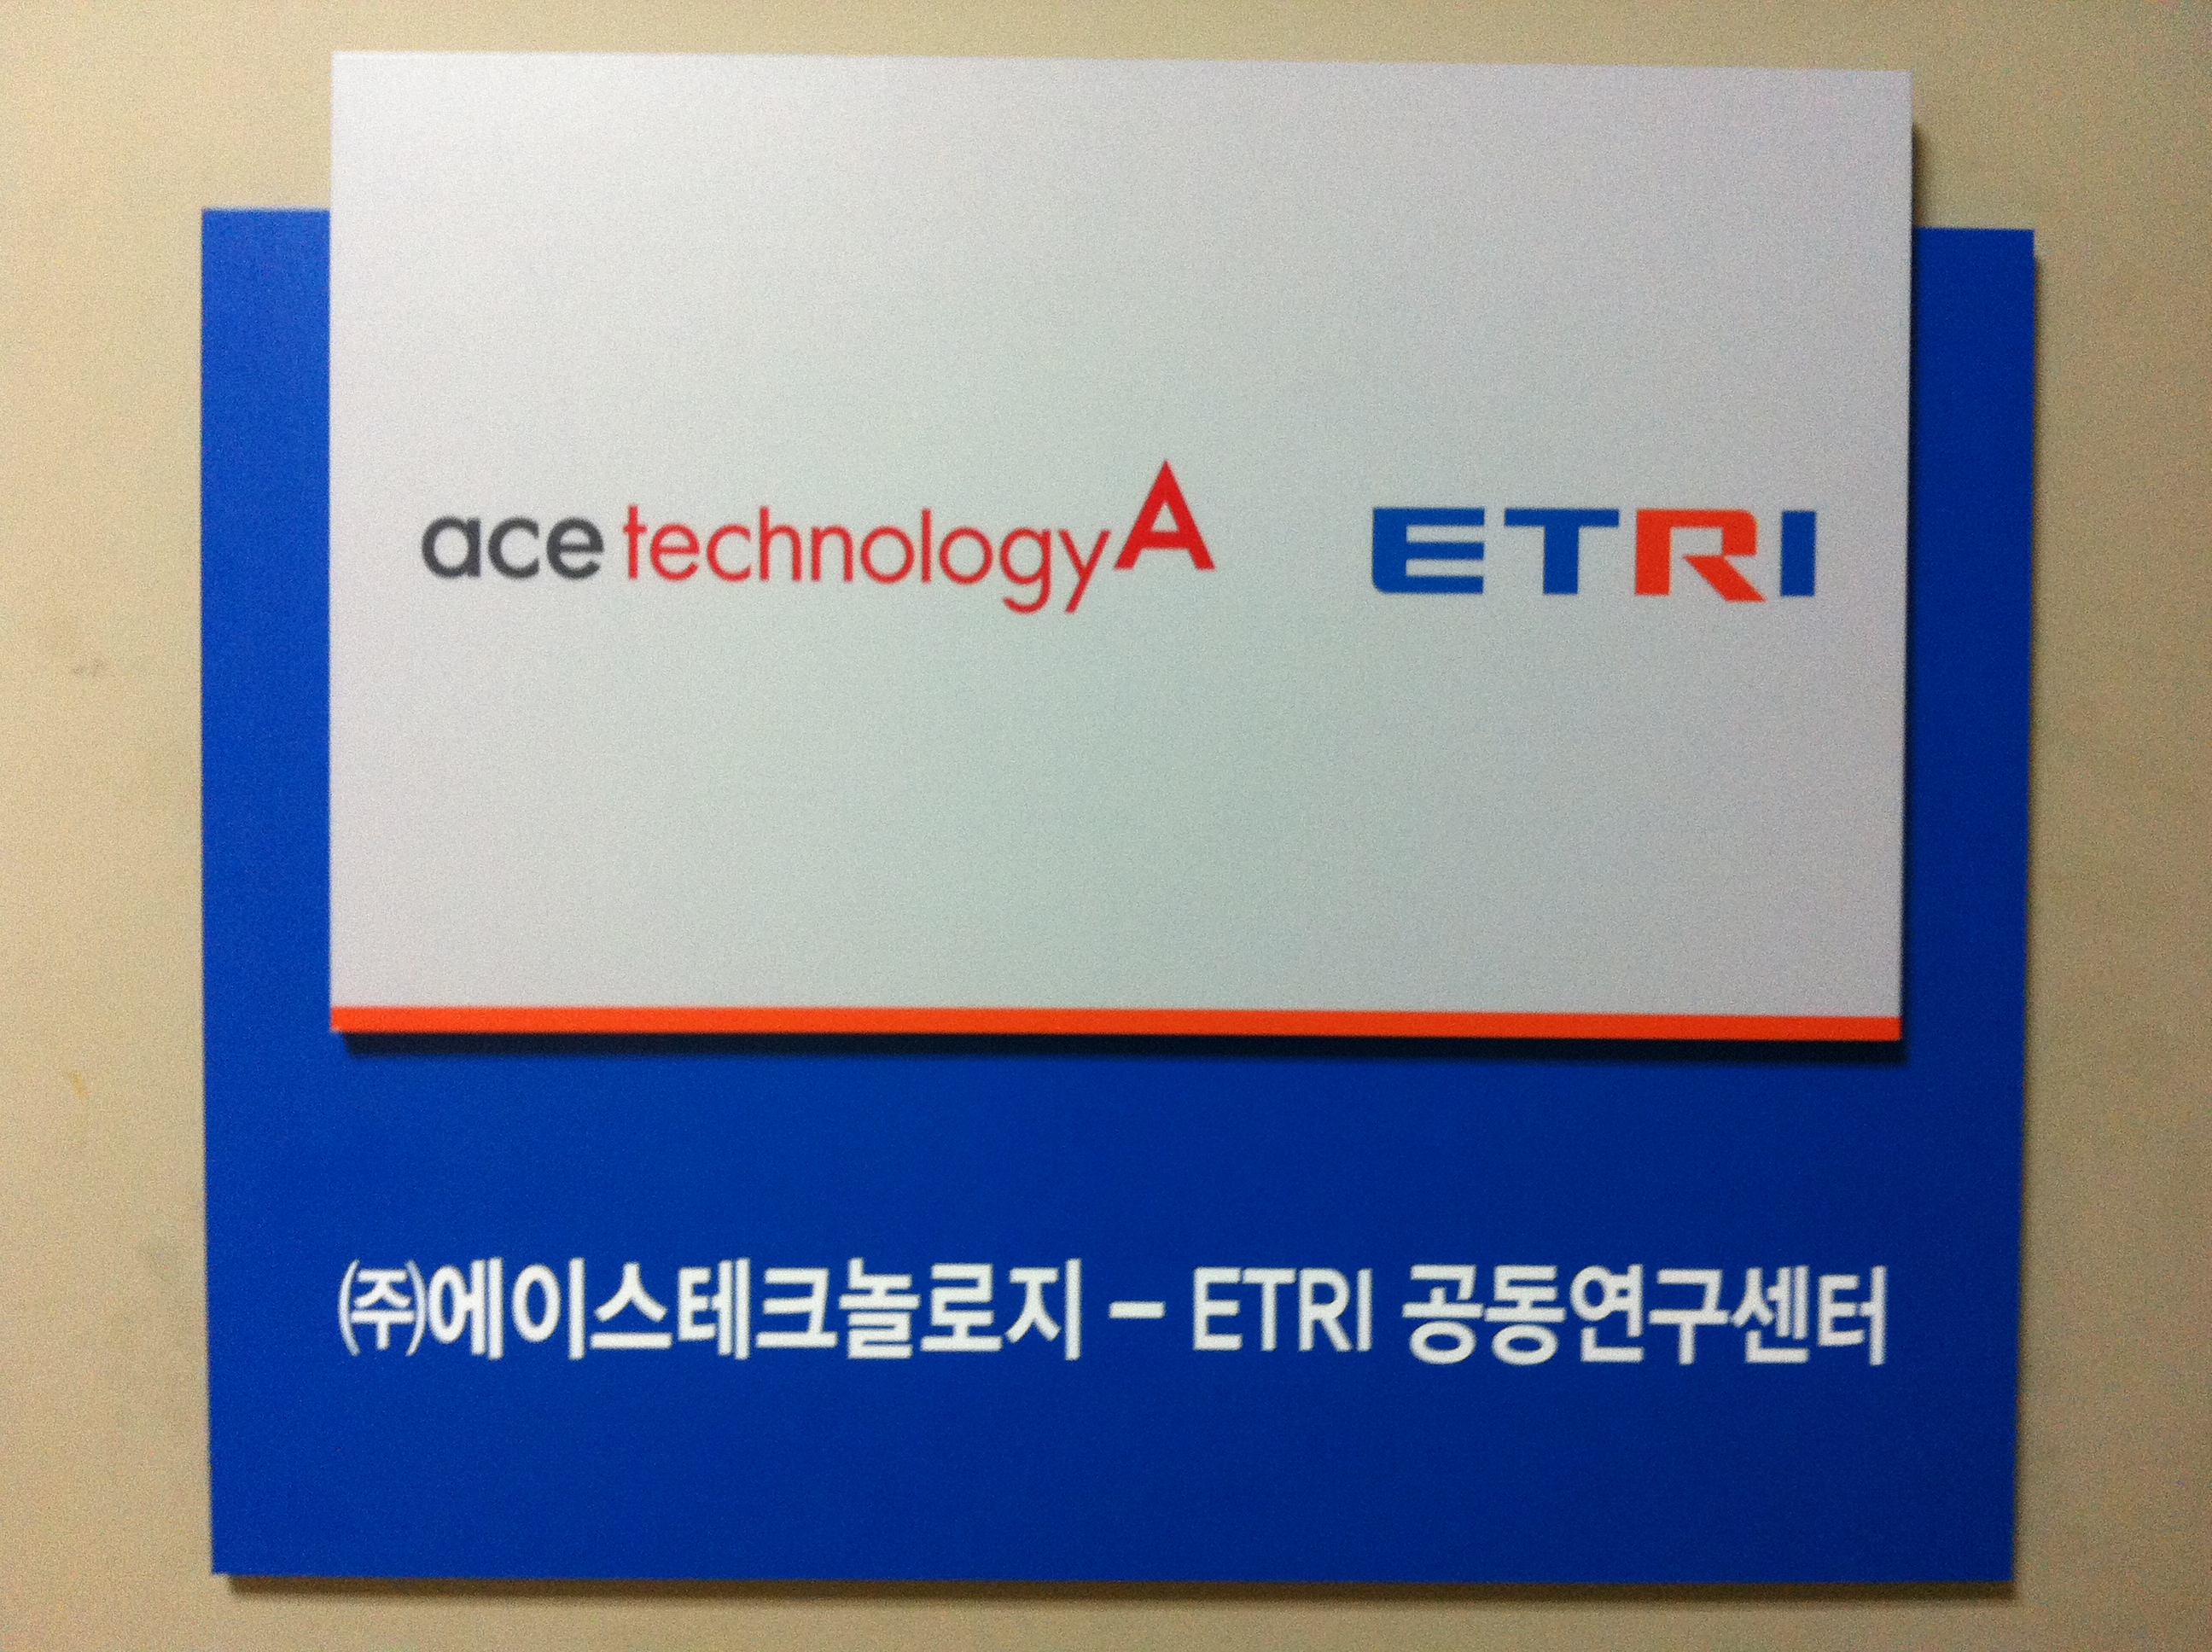 ETRI 에이스테크놀로지 무선통신분야 공동연구센터 개소 [이미지]